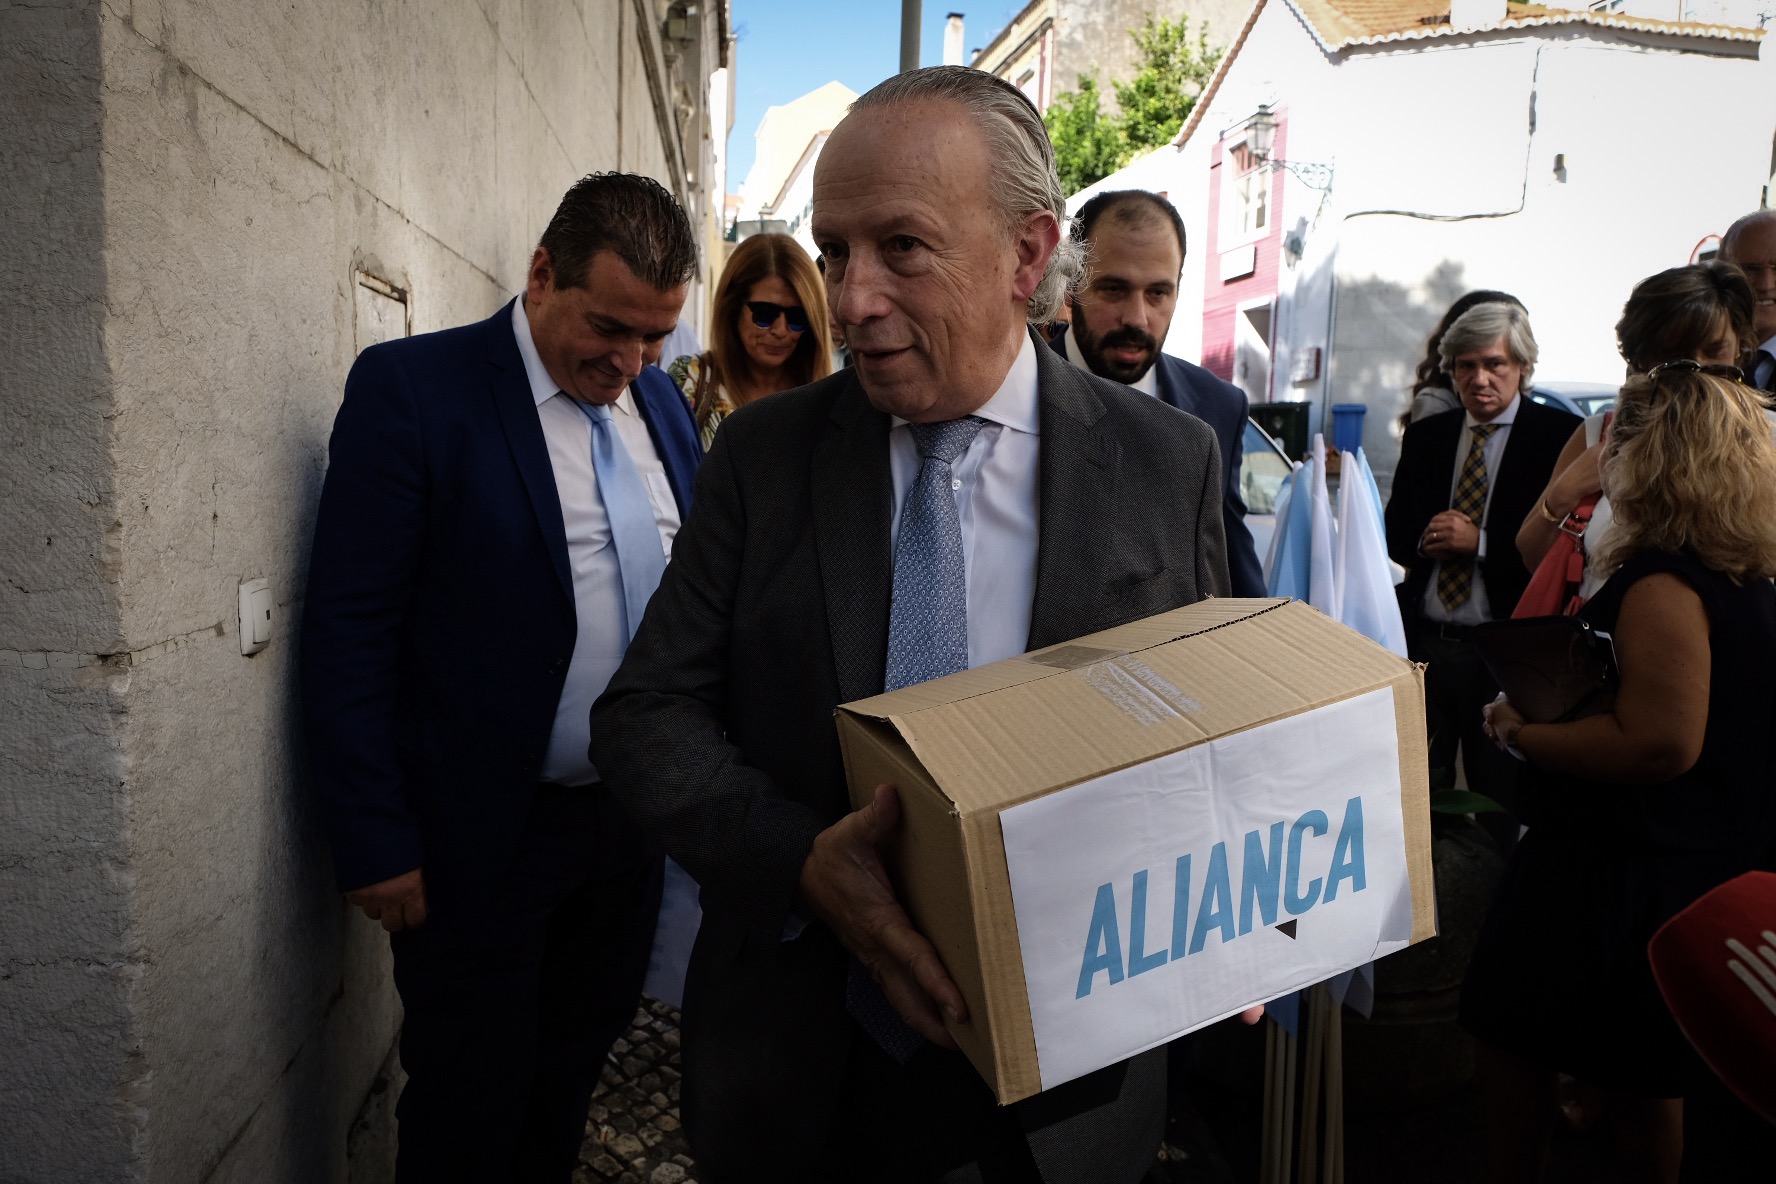 Santana Lopes: “A aliança não quer ser sucessora de nenhum partido”